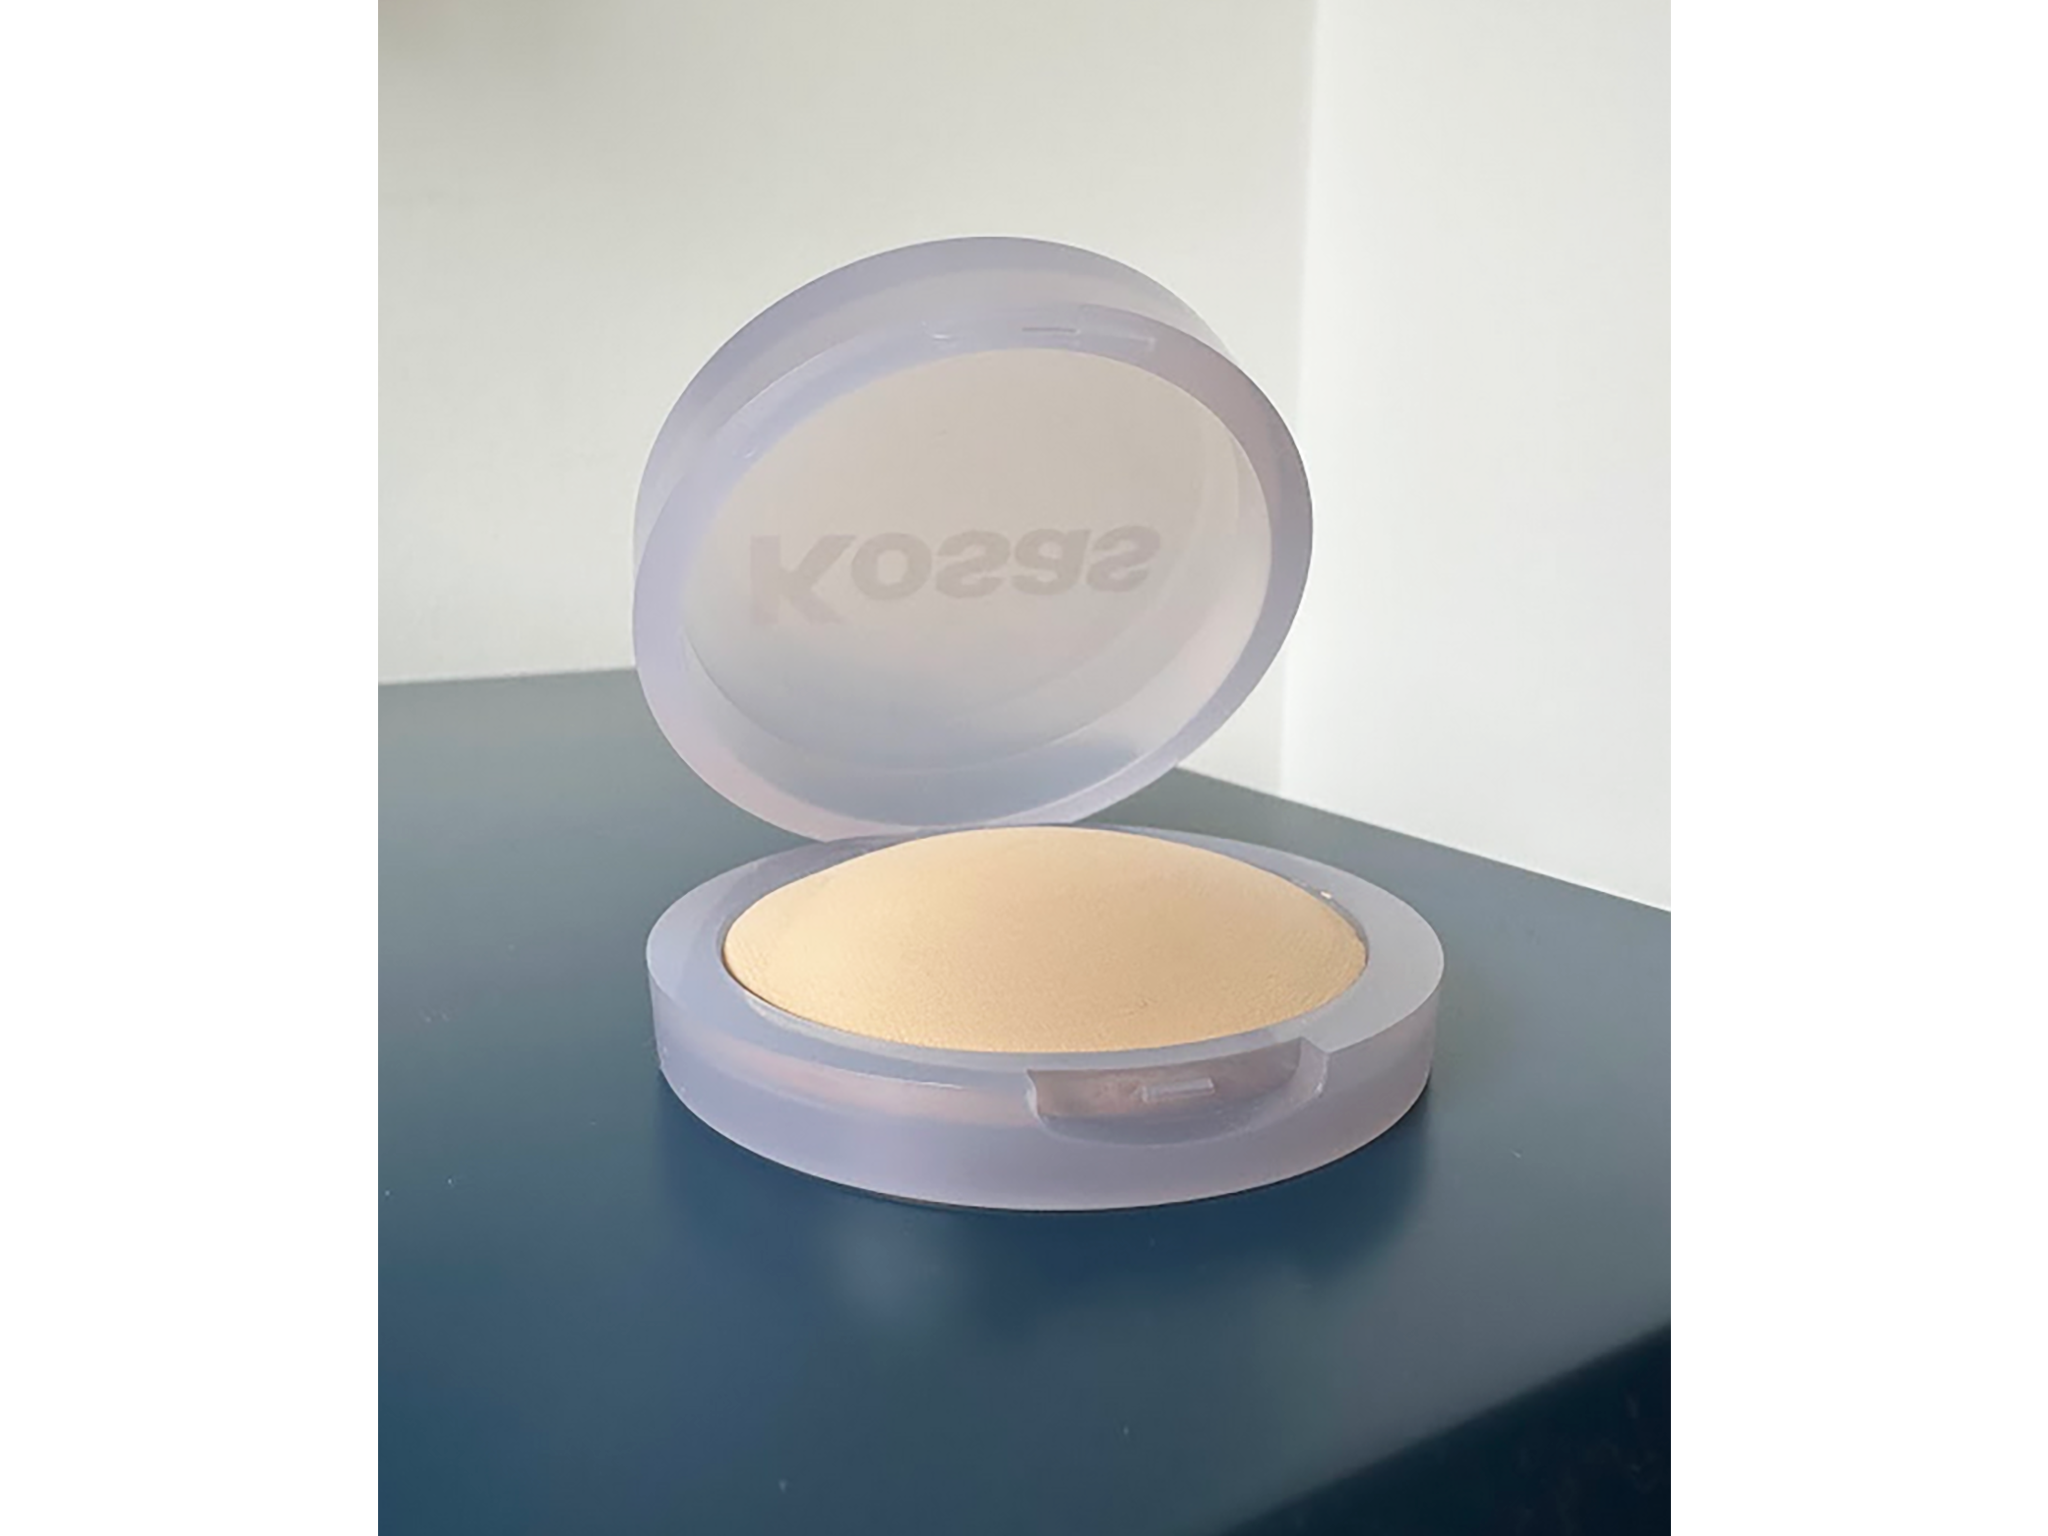 best Kosas products Kosas cloud set baked setting & smoothing powder